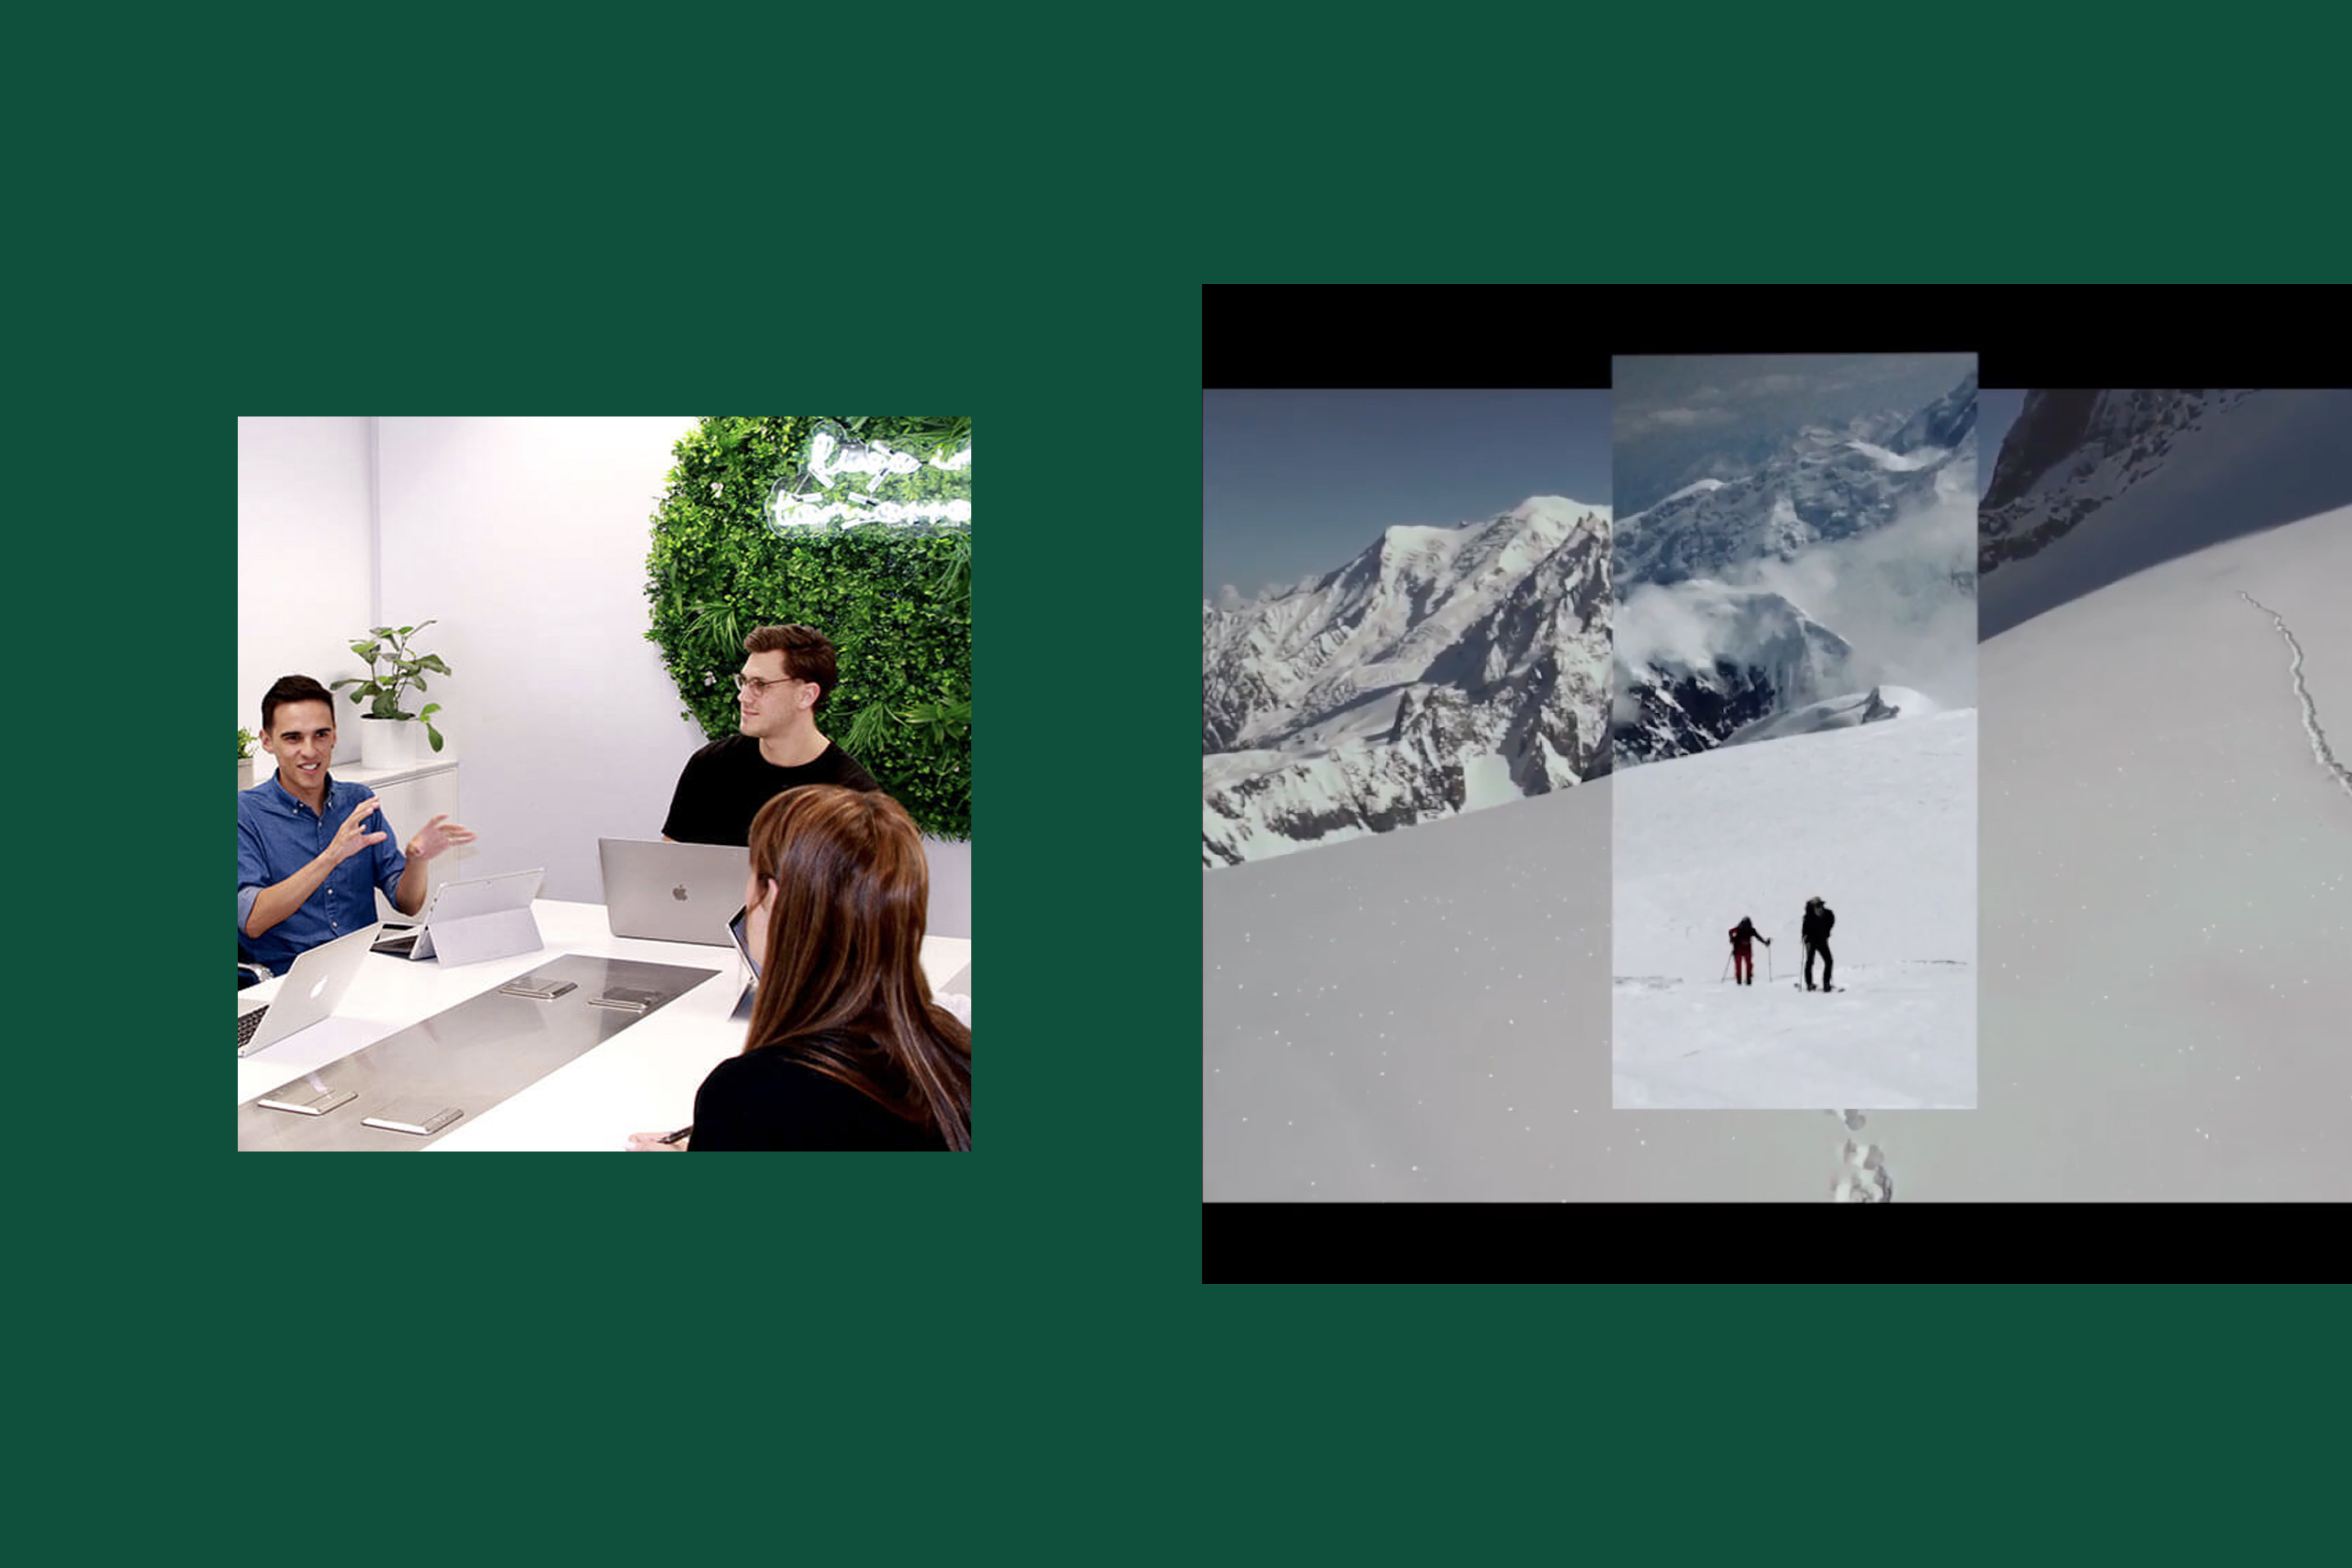 trois personnes qui travaillent ensemble dans un bureau et une campagne publicitaire avec des skieurs en montagne